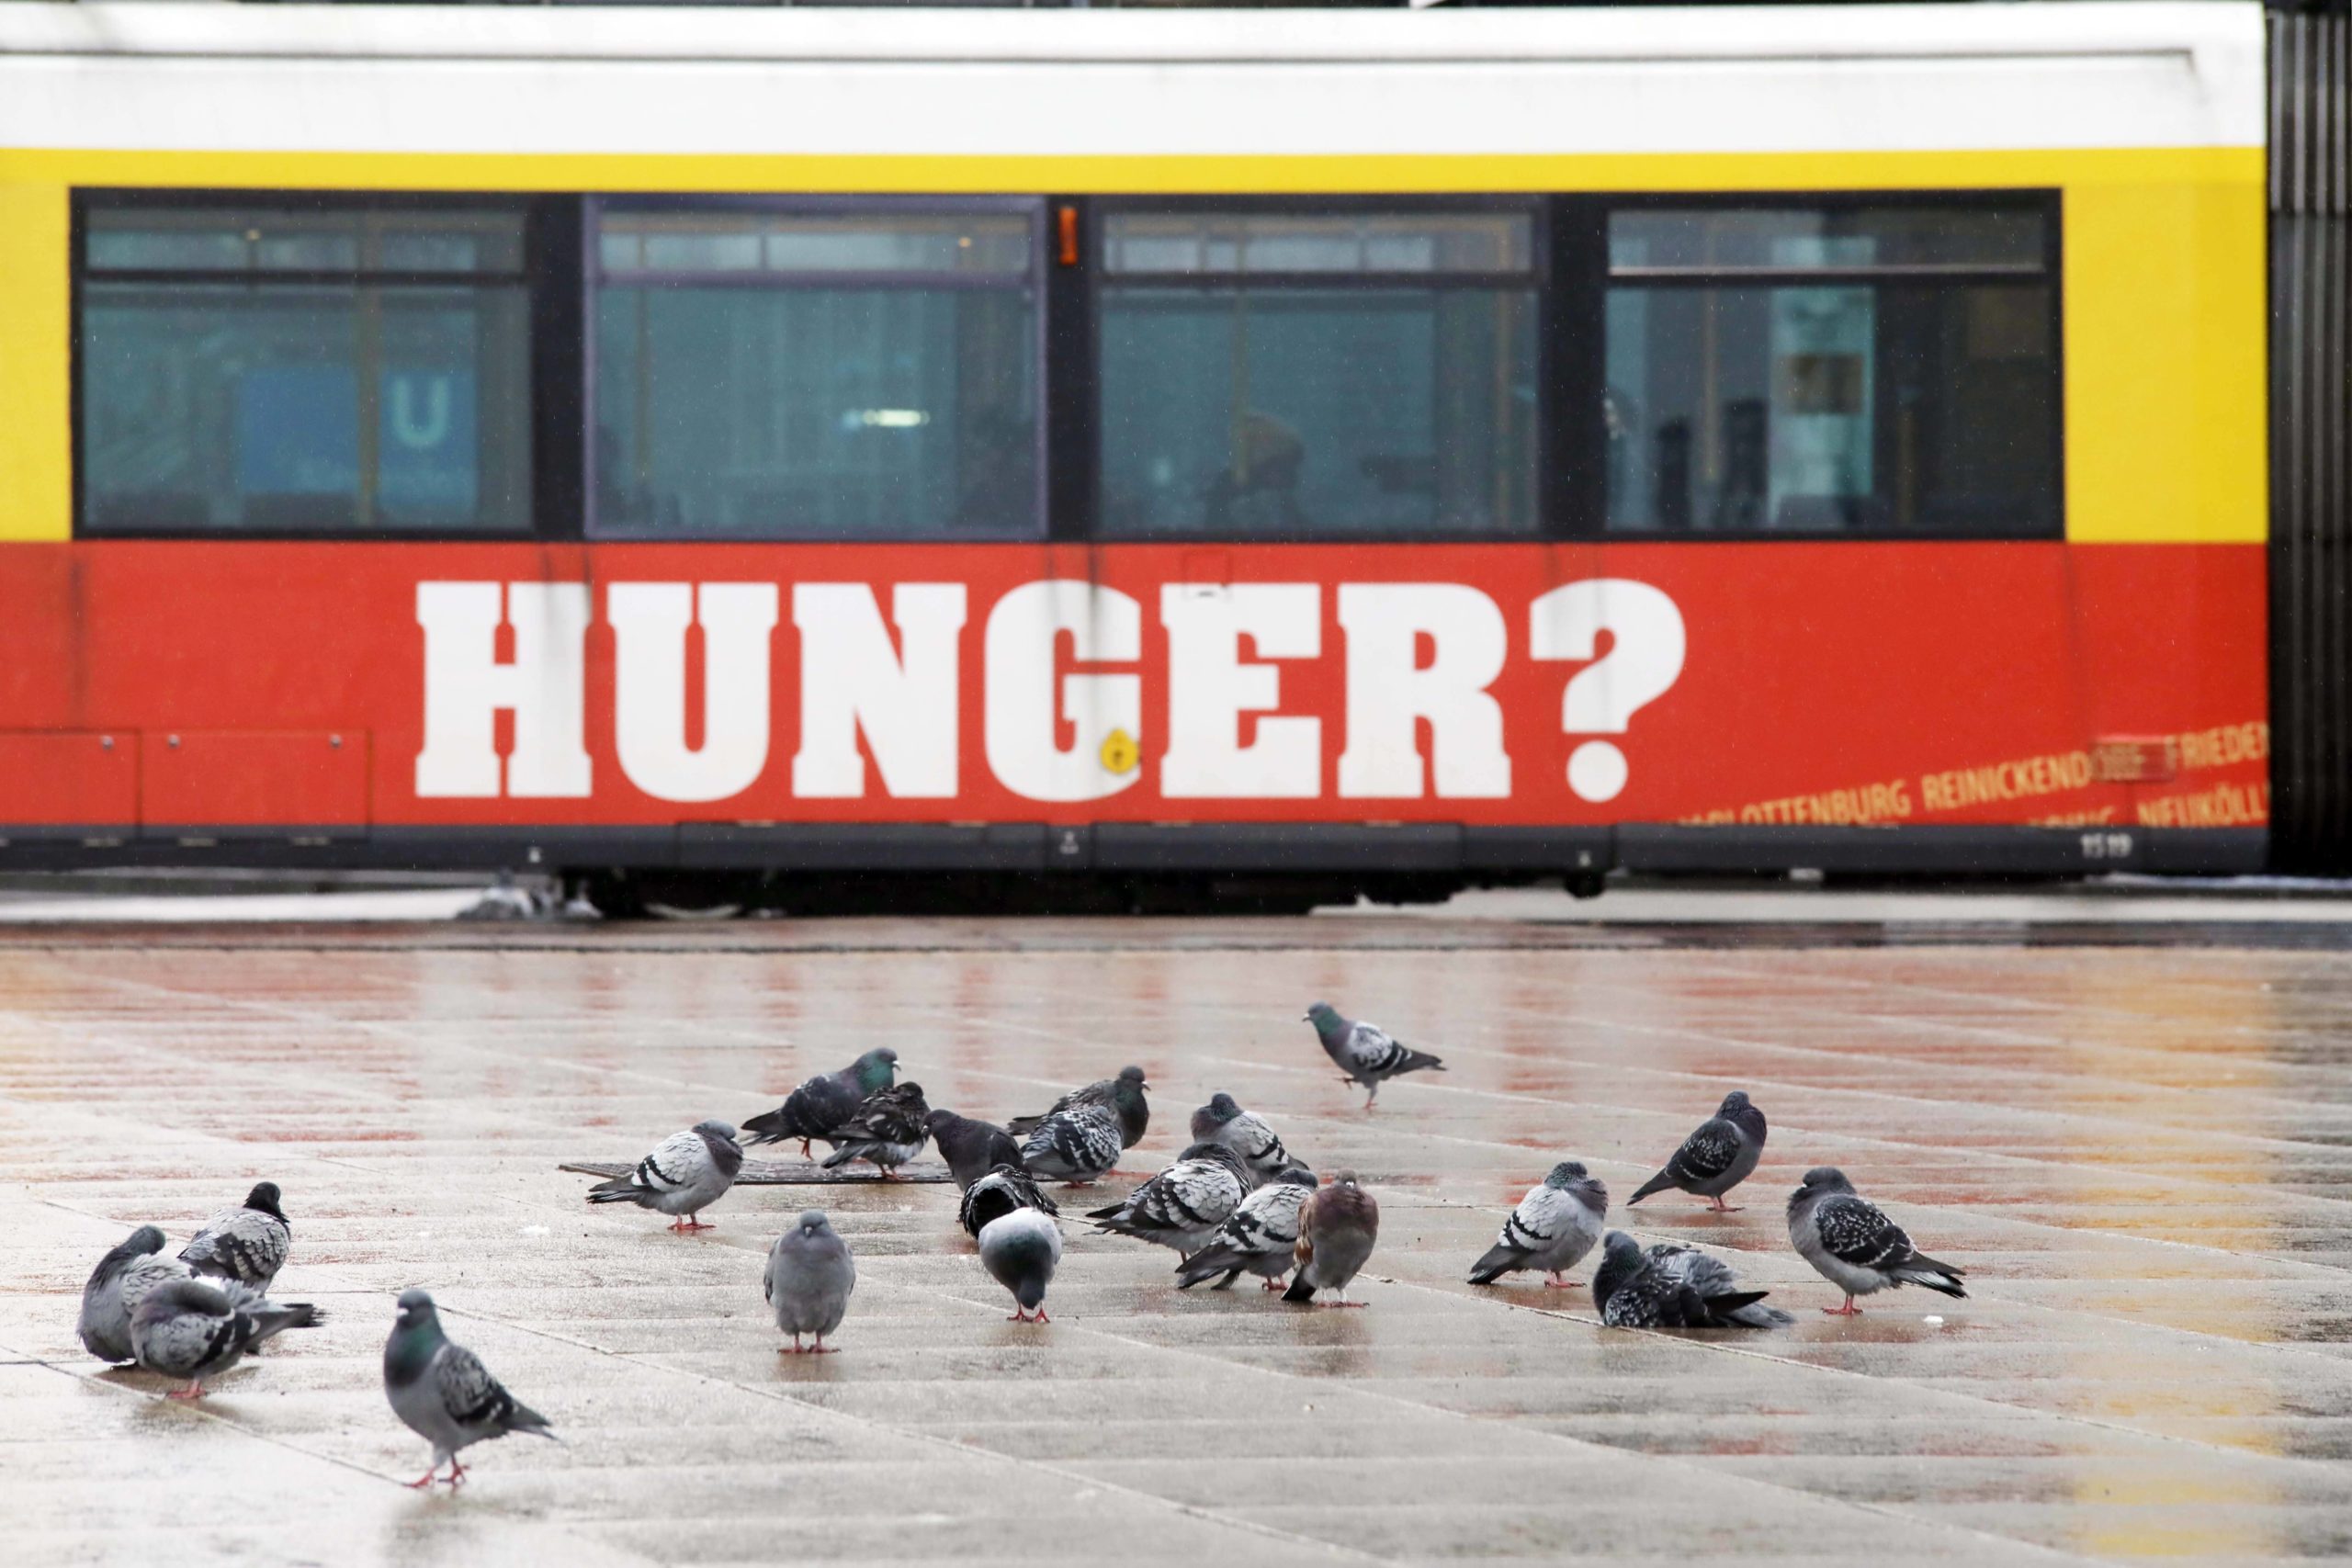 Satt sein – unser Autor geht der Frage auf den Grund. Berliner Tram mit Werbeaufschrift "Hunger" fährt an einem Schwarm Tauben vorbei.